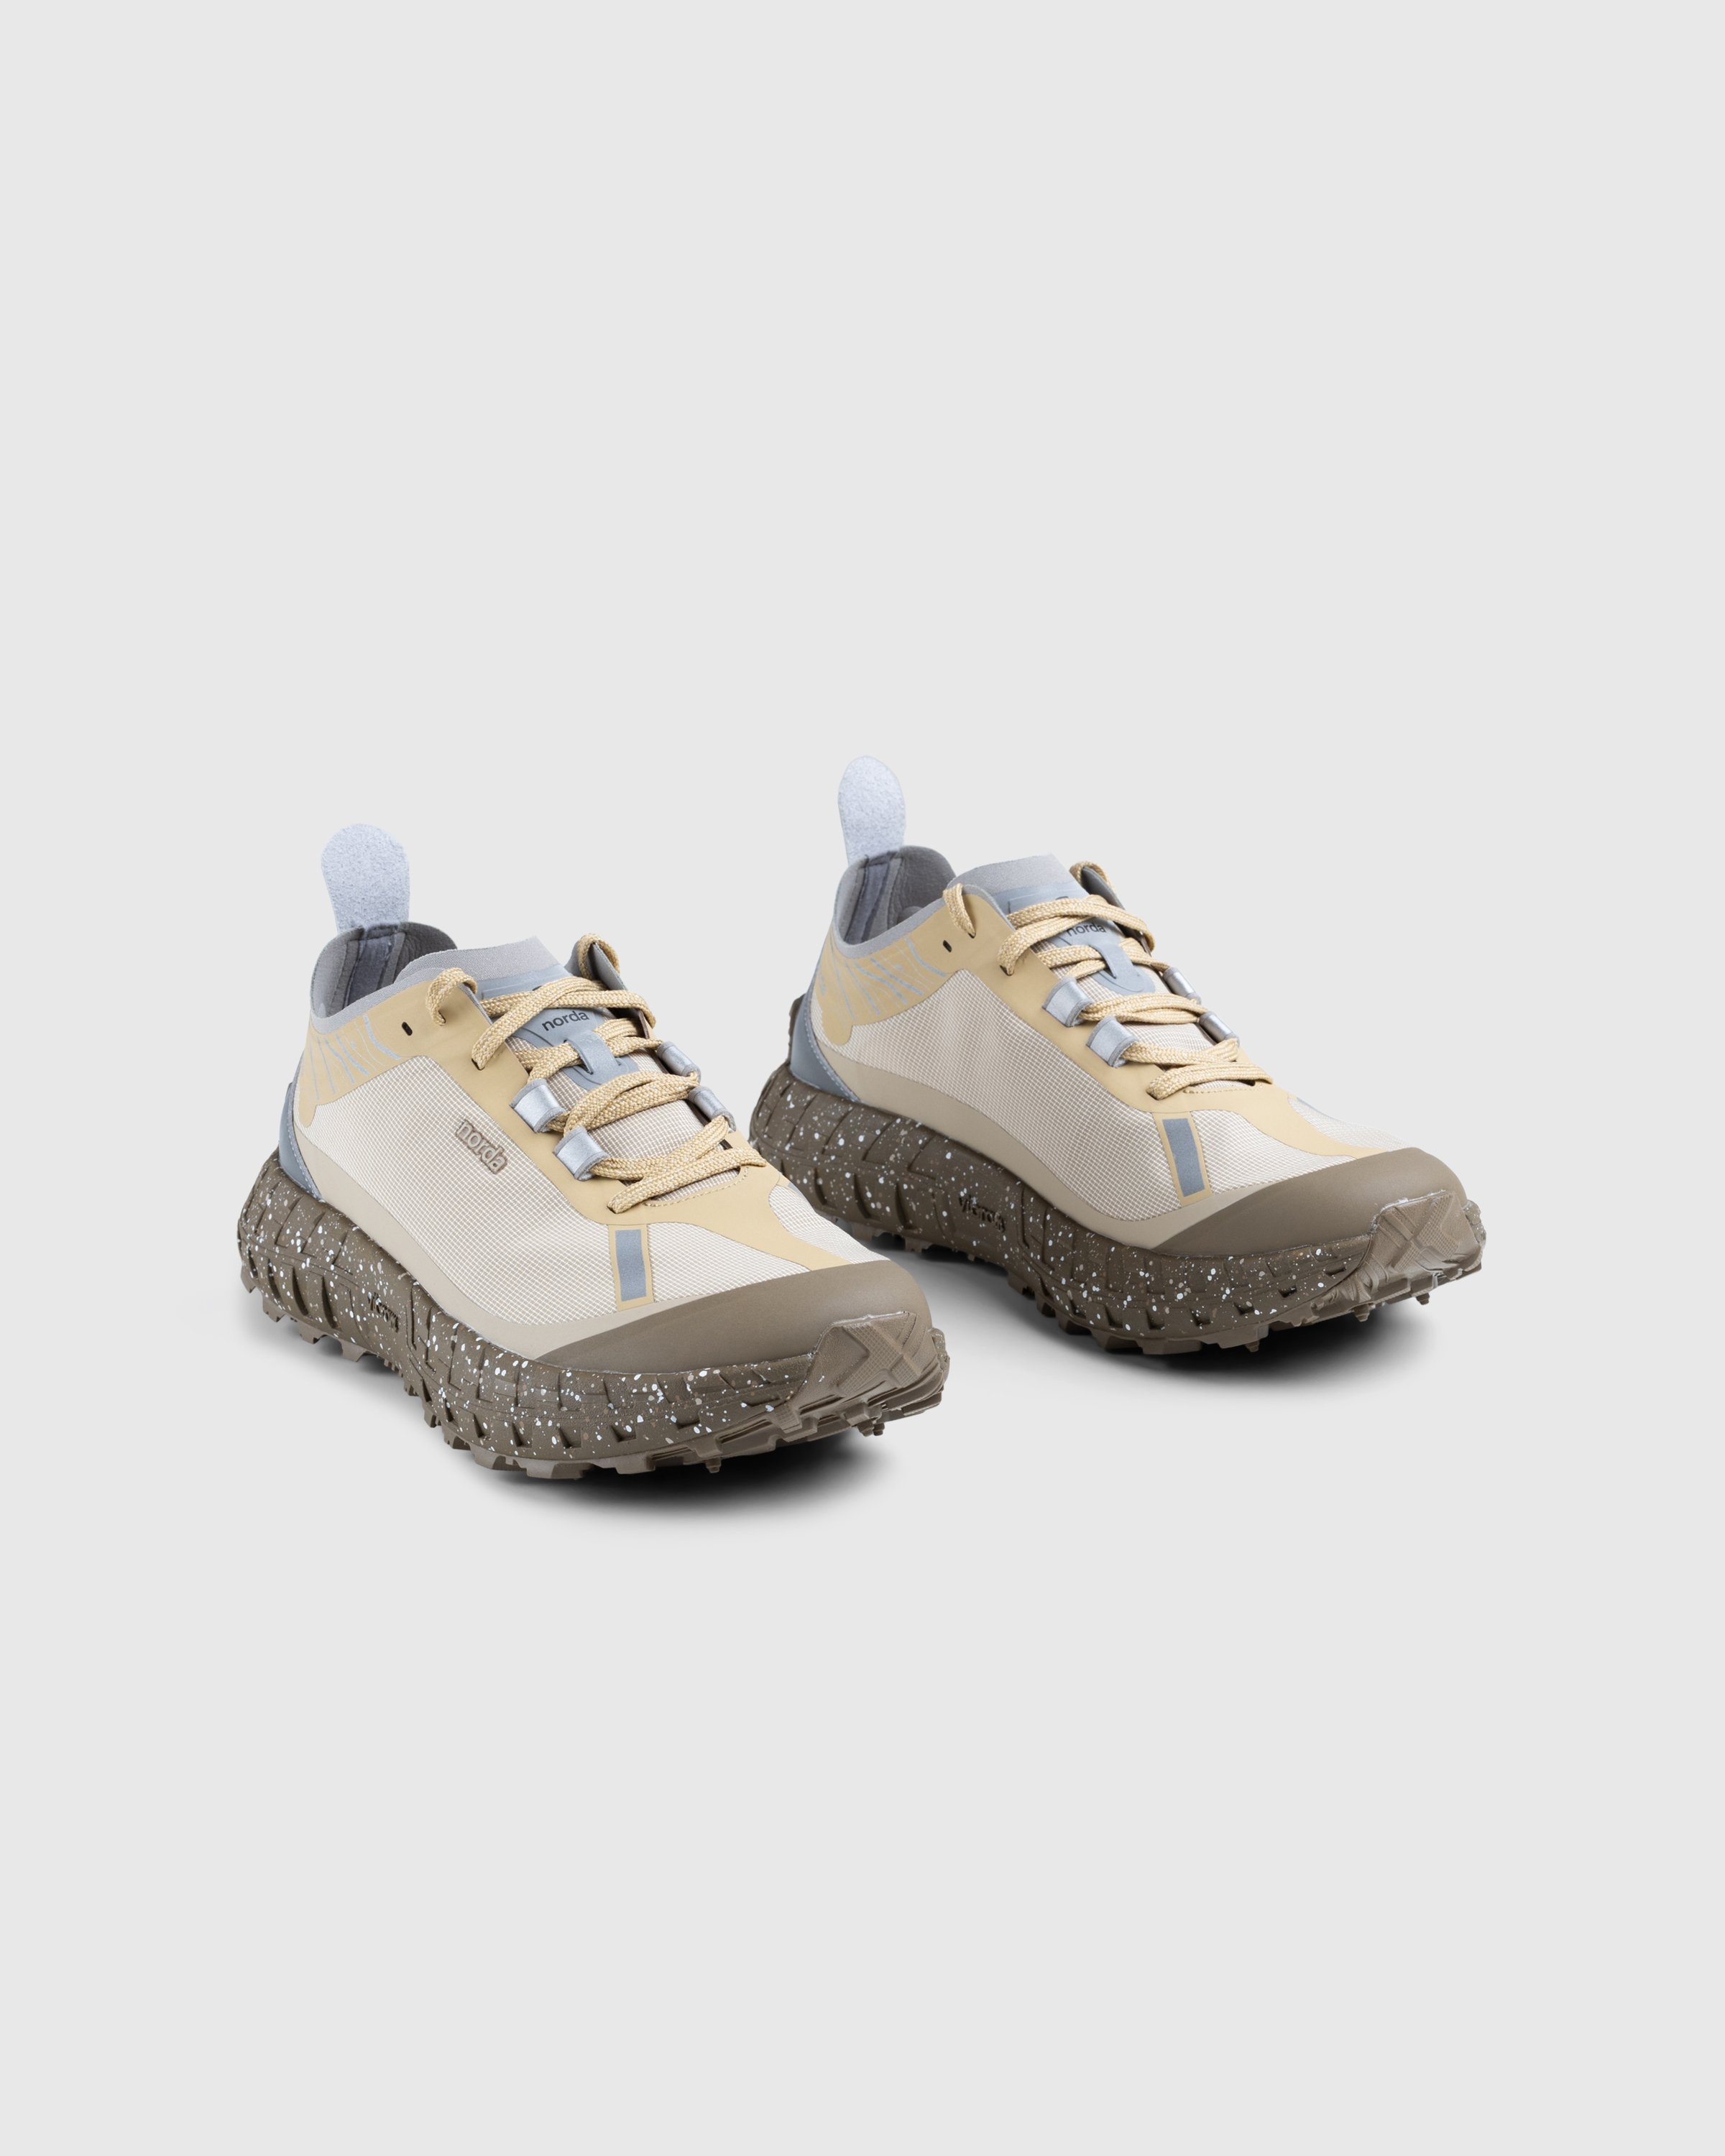 Norda – 001 M Regolith Brown - Sneakers - Brown - Image 3